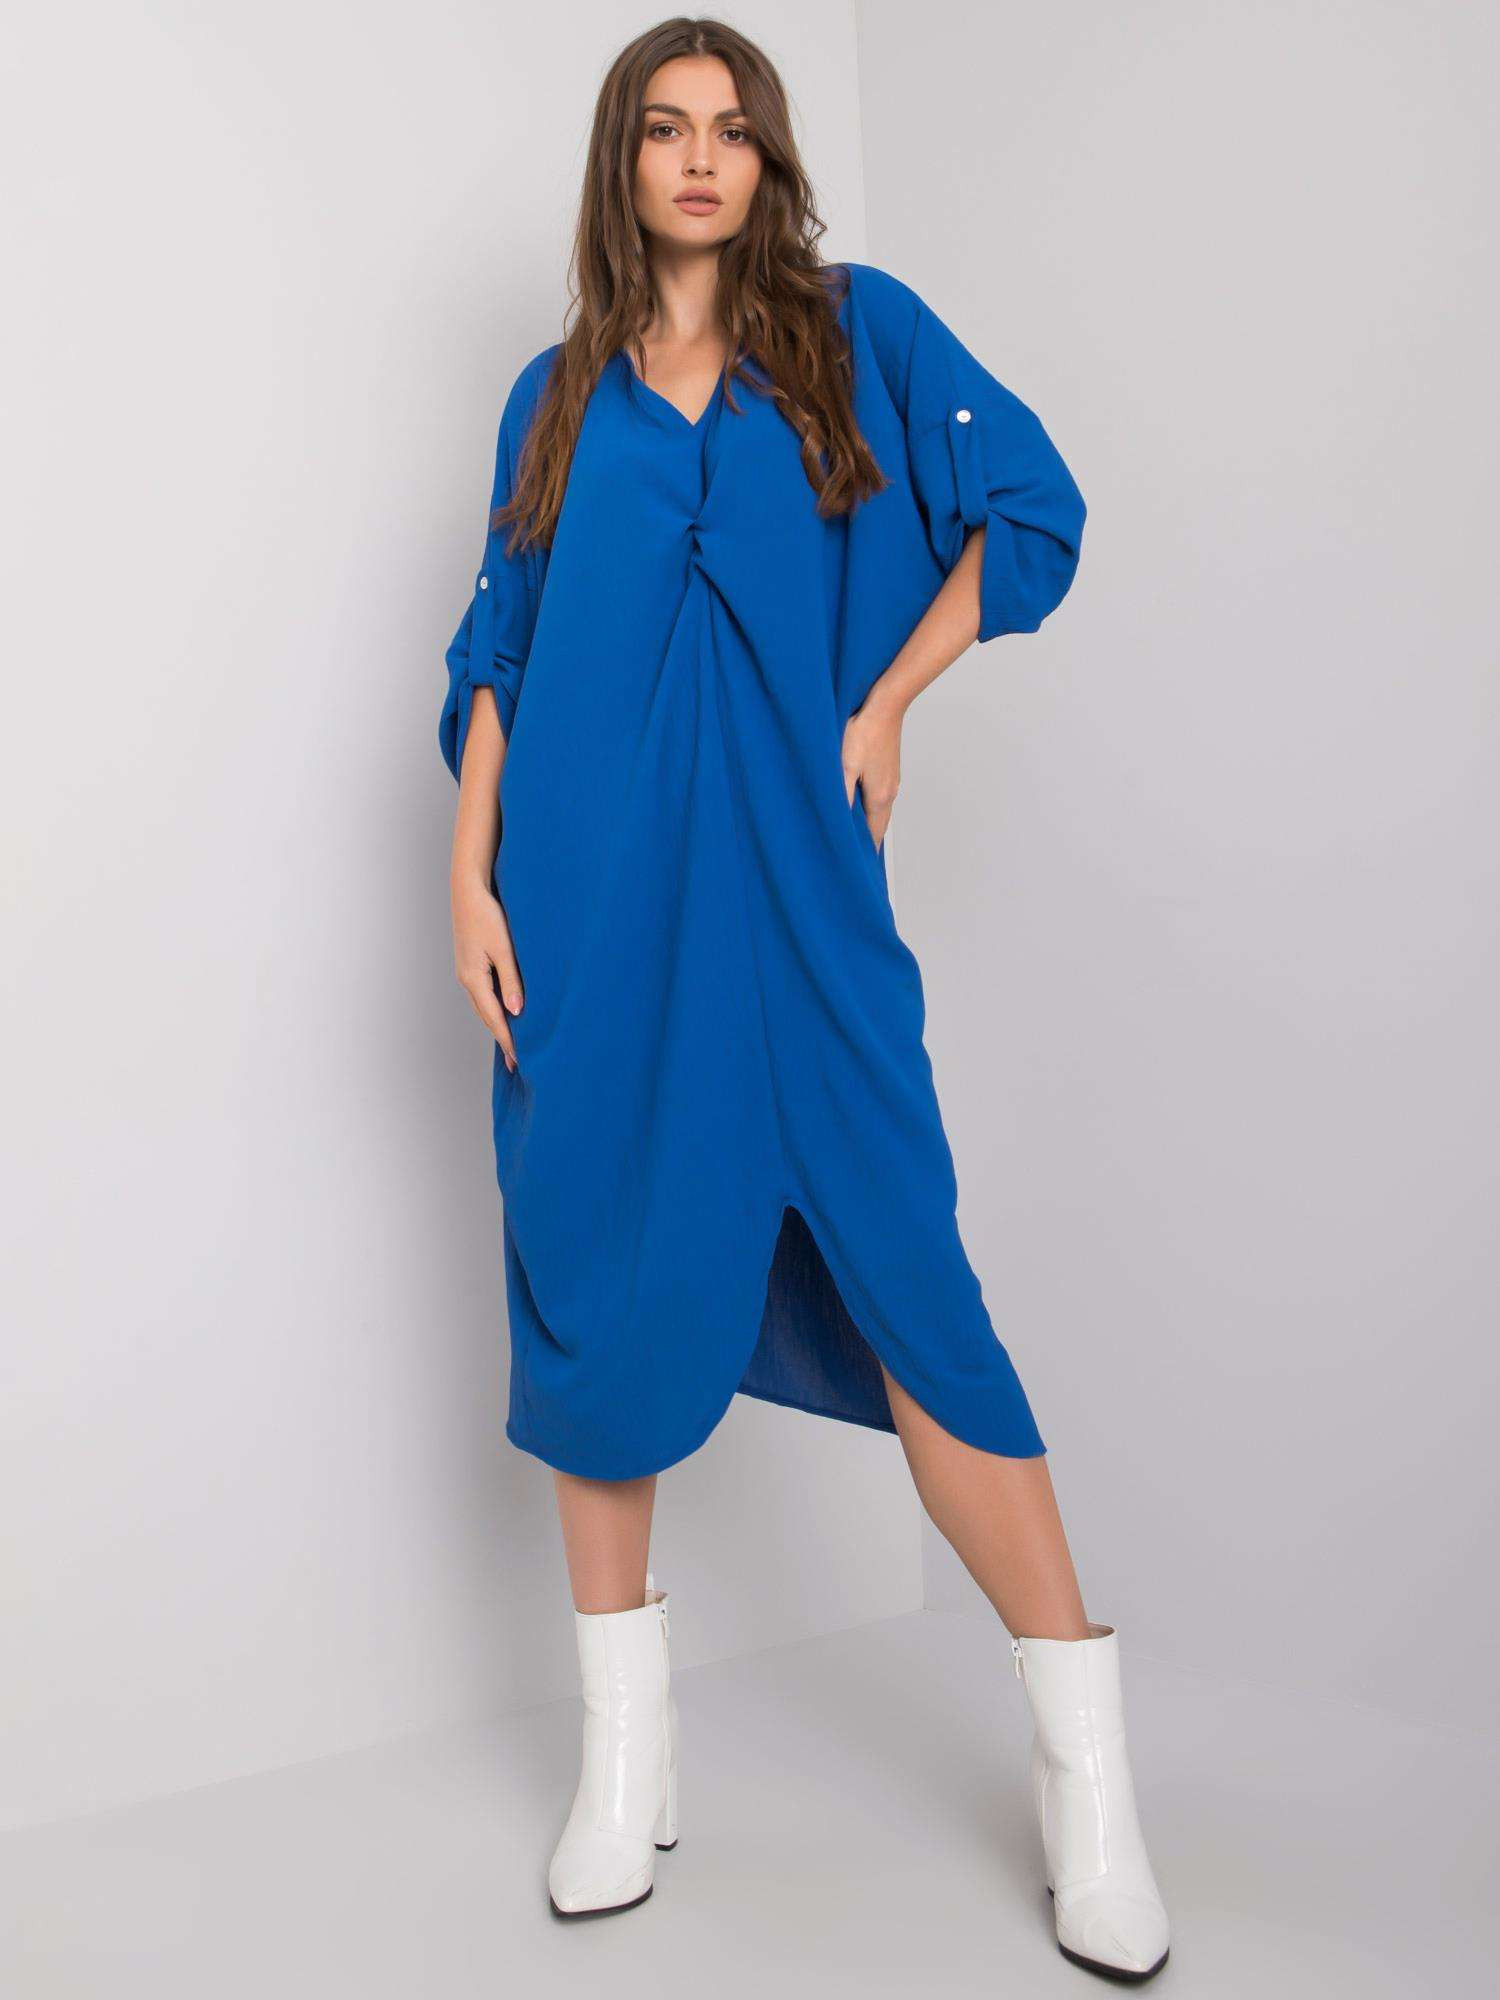 Šaty DHJ SK 20148.20 tmavě modrá jedna velikost